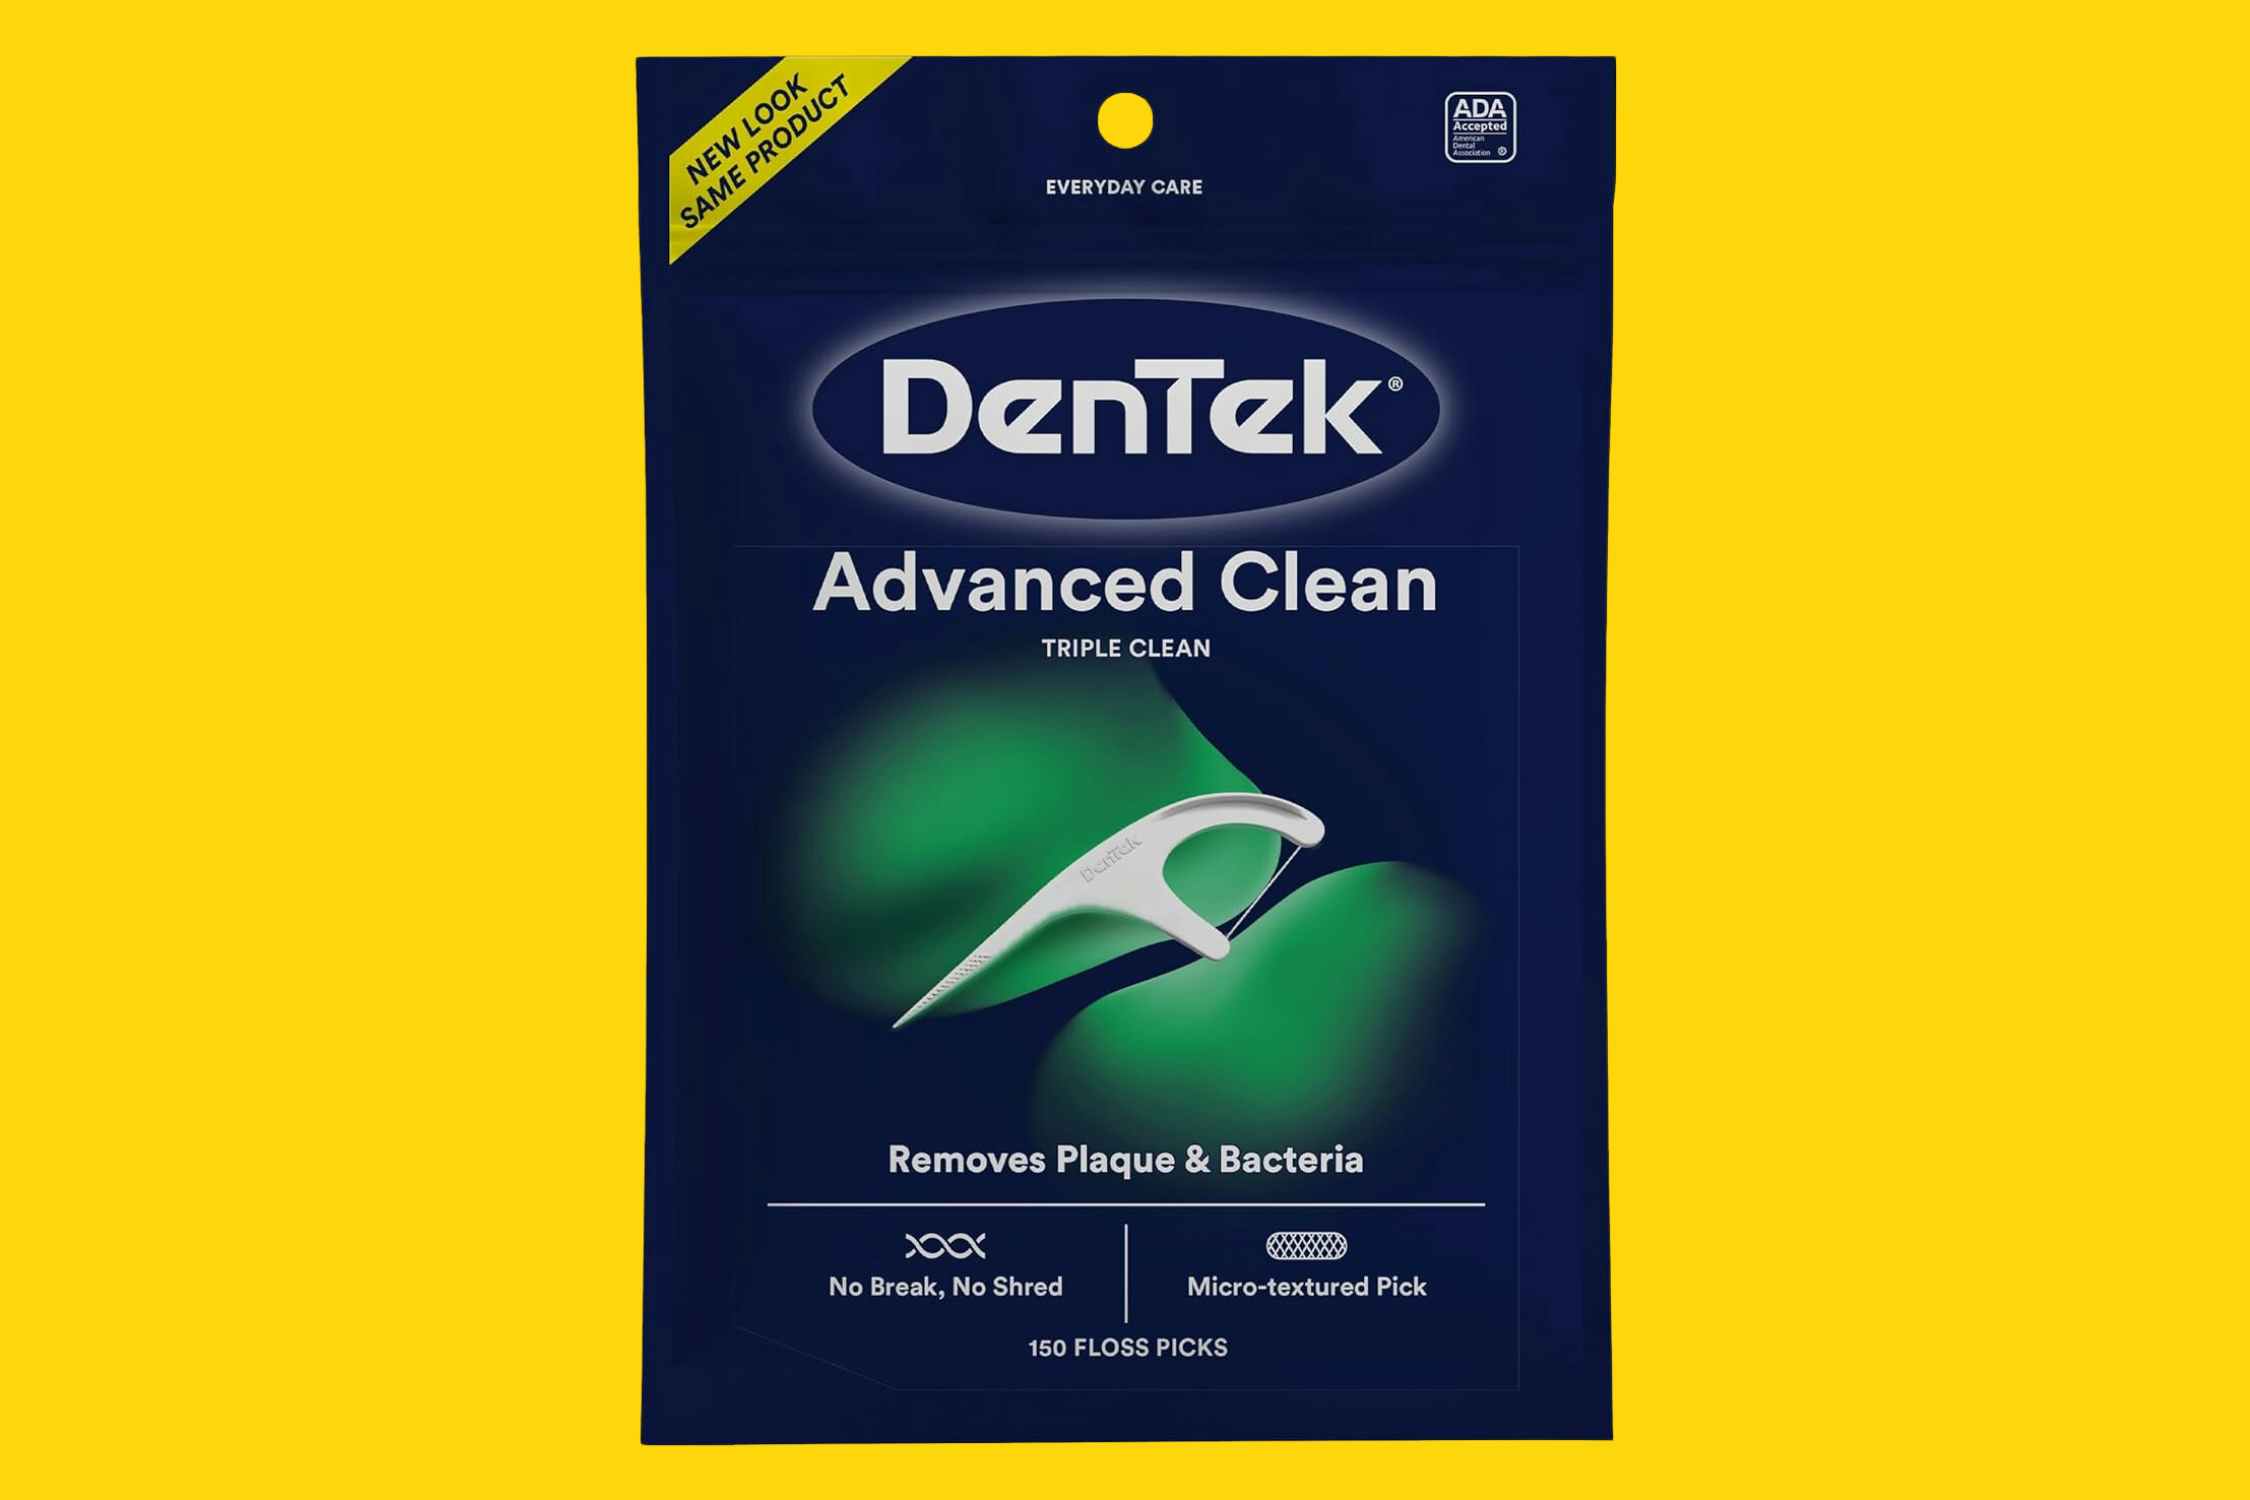 Dentek Advanced Clean Floss Picks 150-Pack, Now $2.59 on Amazon